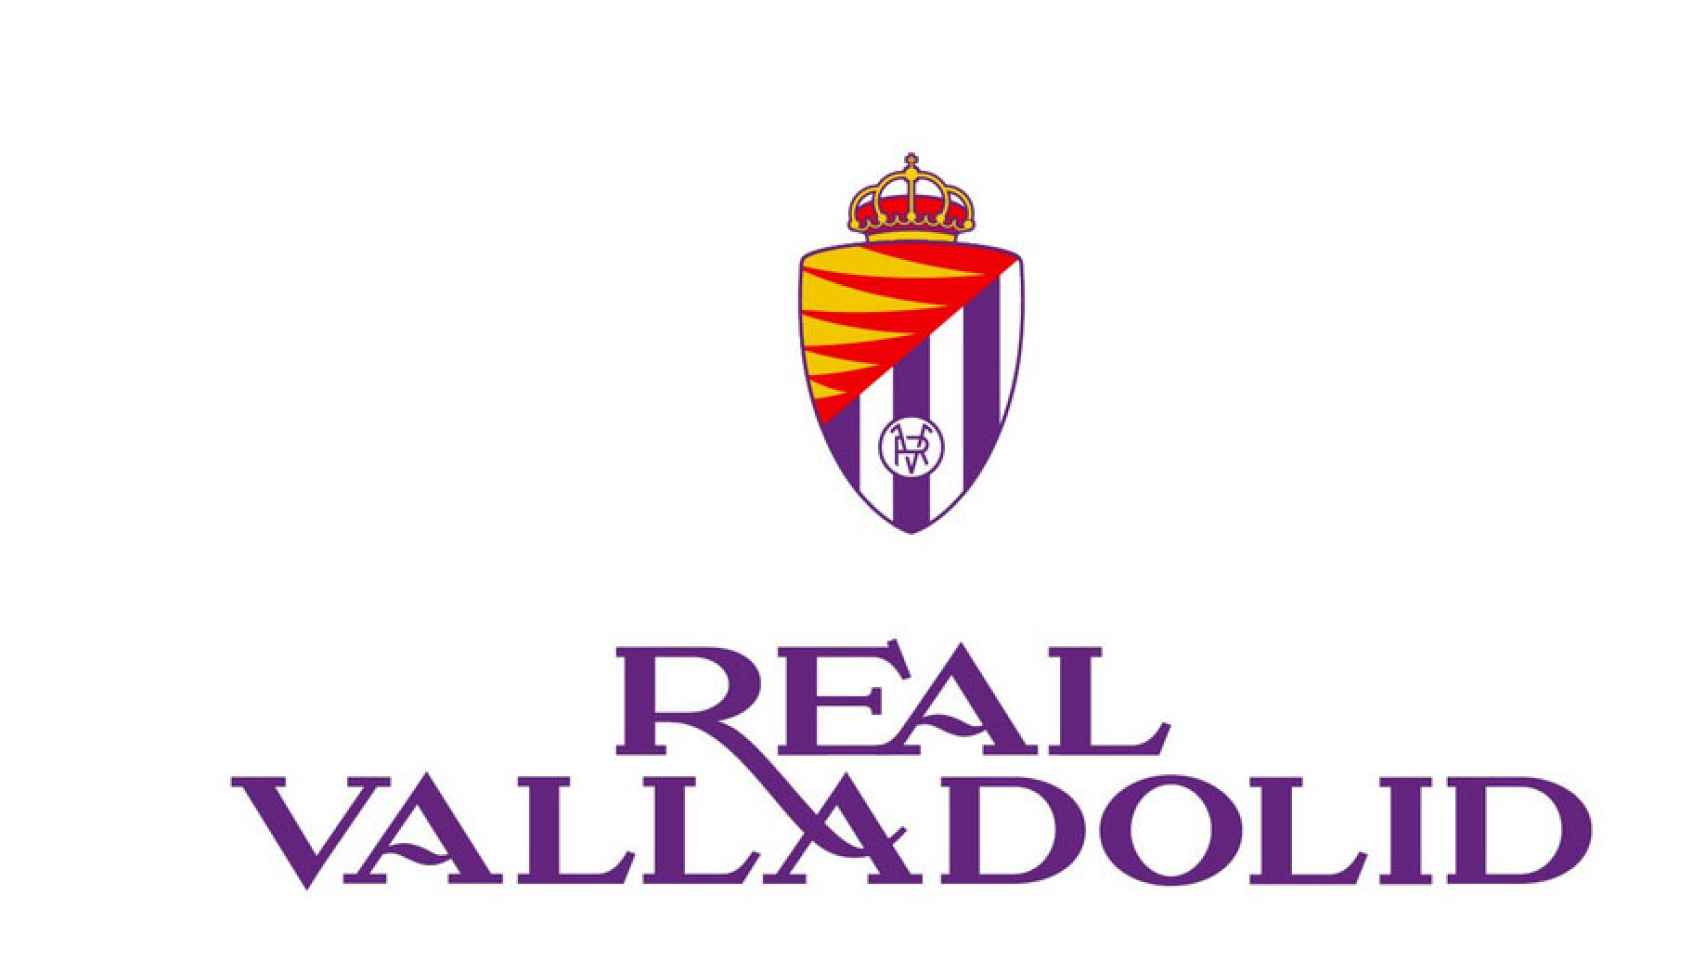 Nuevo escudo del Real Valladolid